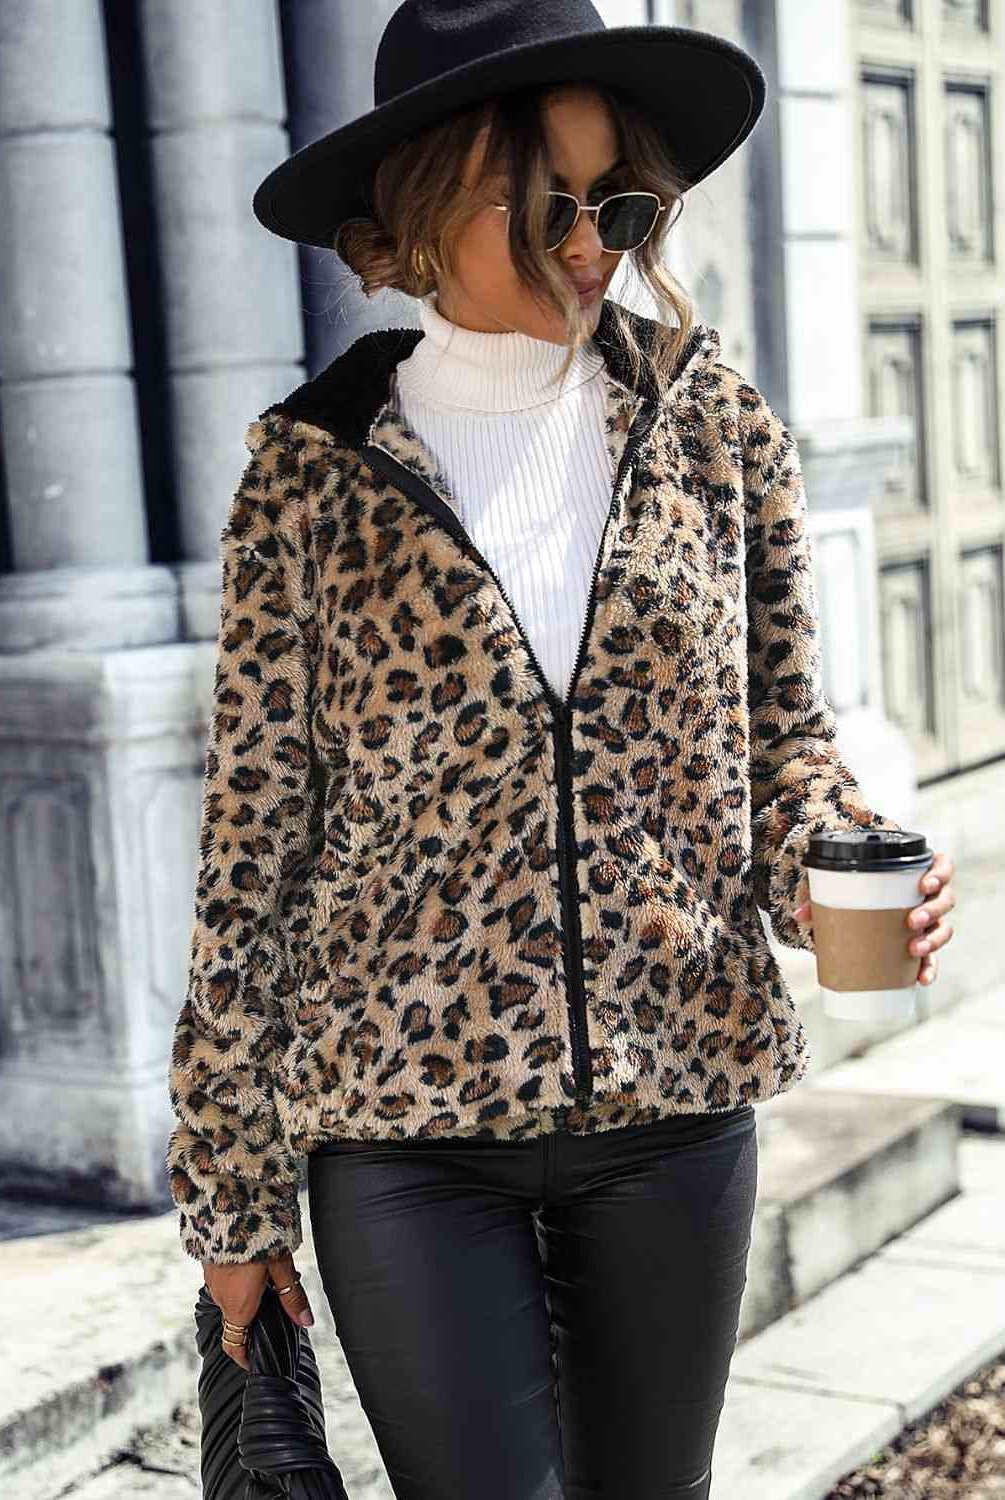 Gray Leopard Zip-Up Hooded Jacket Trends